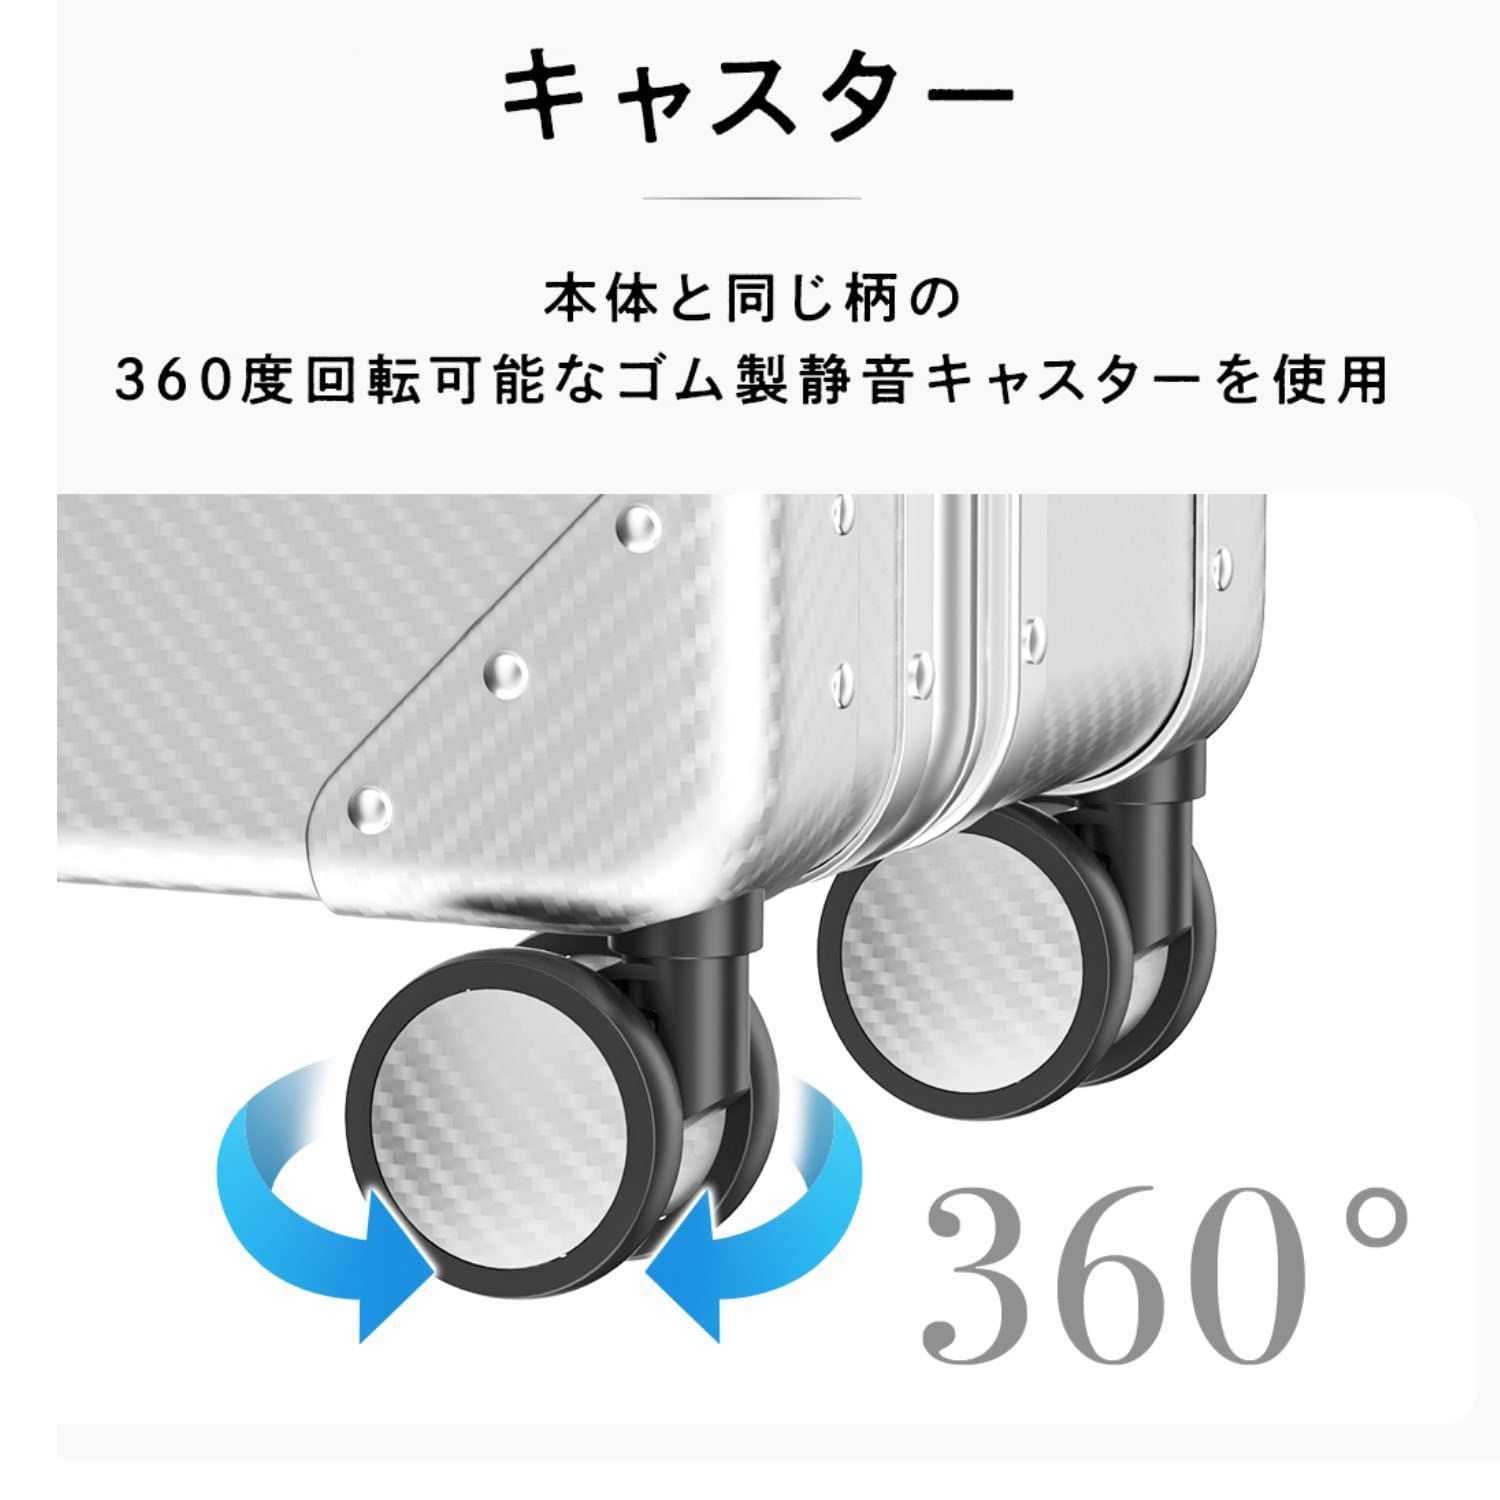 ADIGO スーツケース 日本製 機内持ち込み キャリーケース 軽量 sサイズ